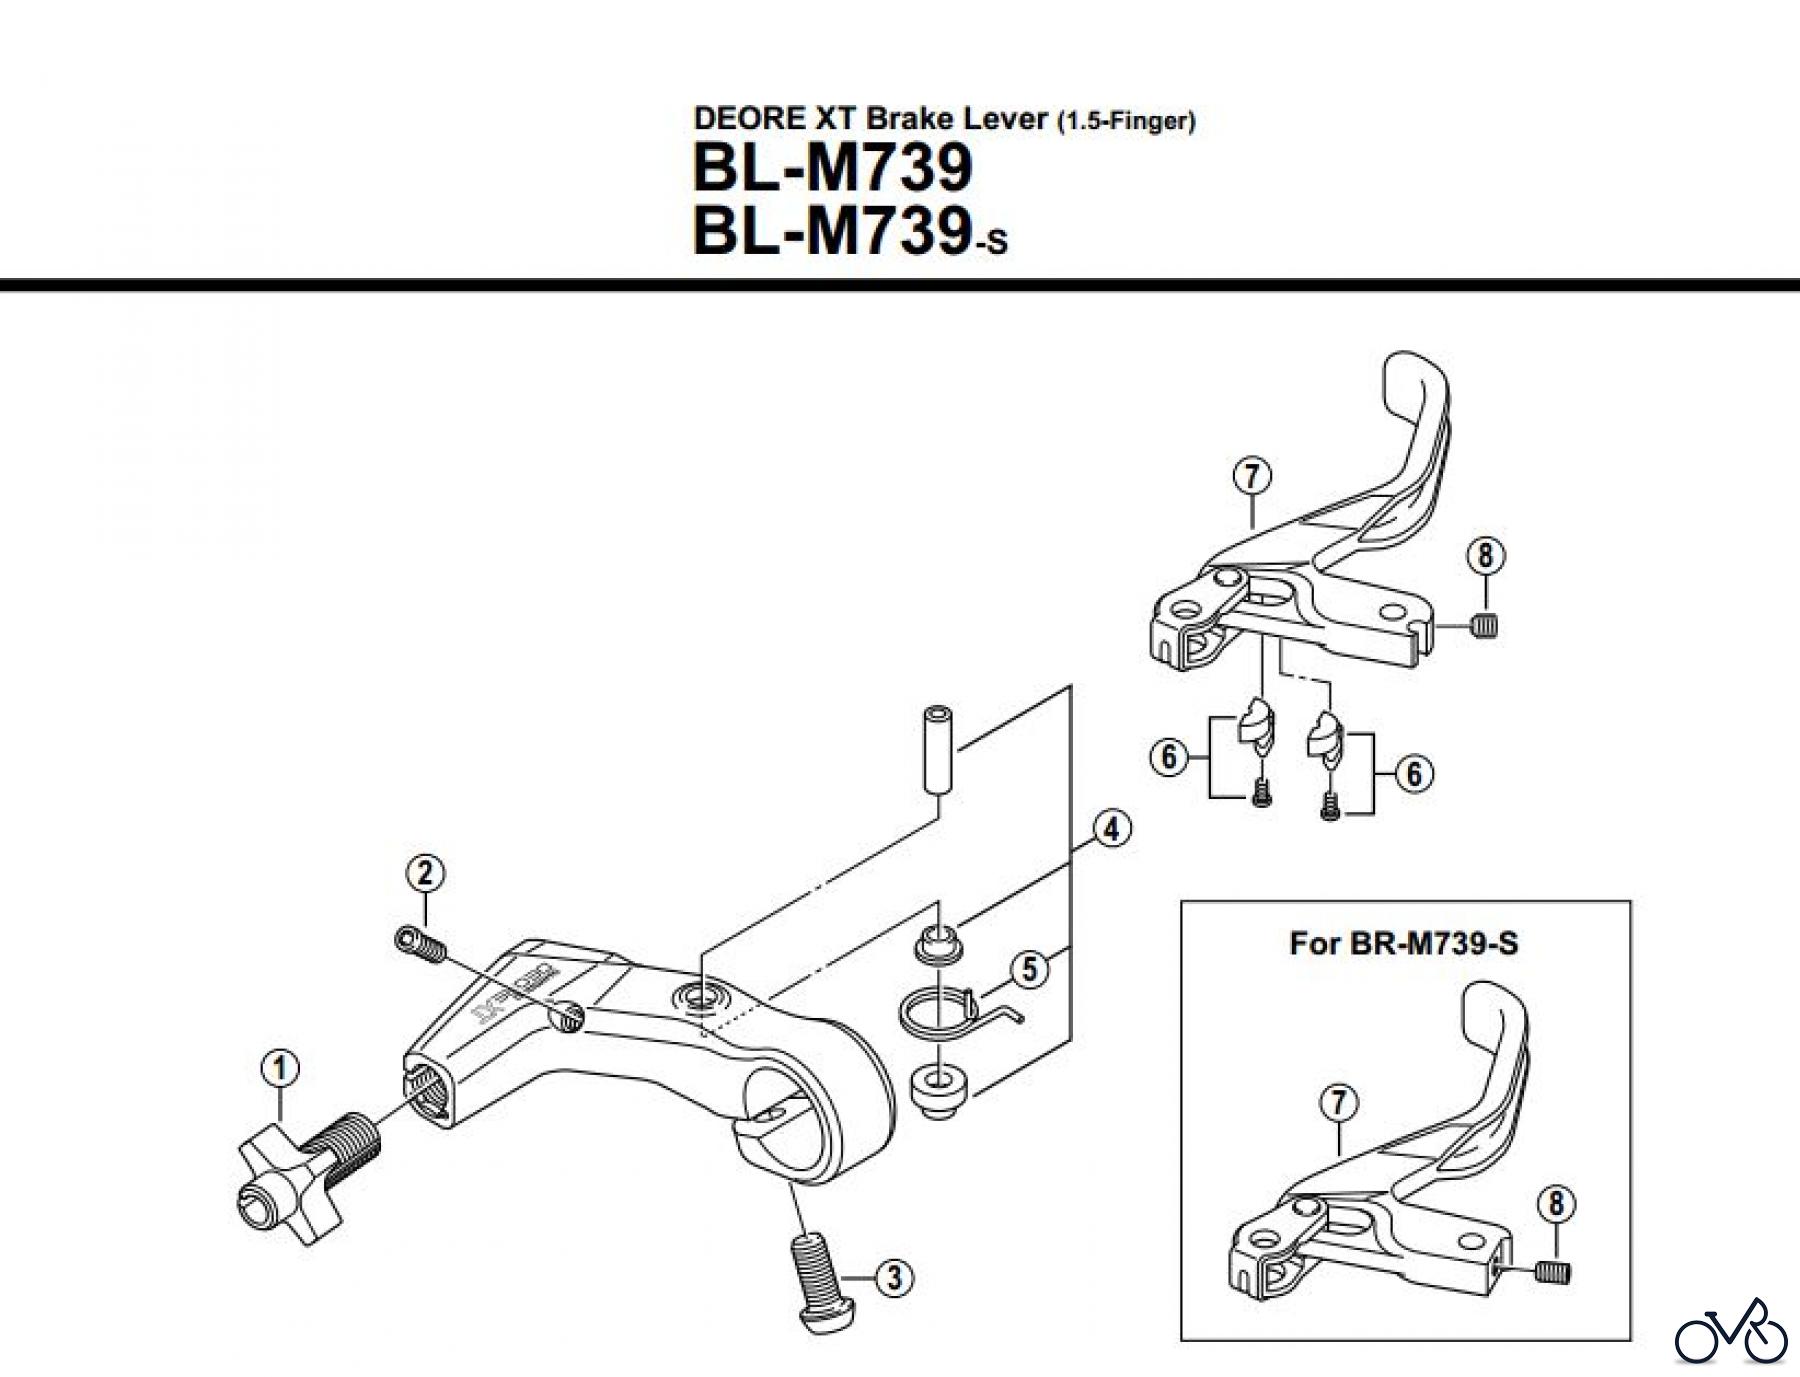  Shimano BL Brake Lever - Bremshebel BL-M739-S